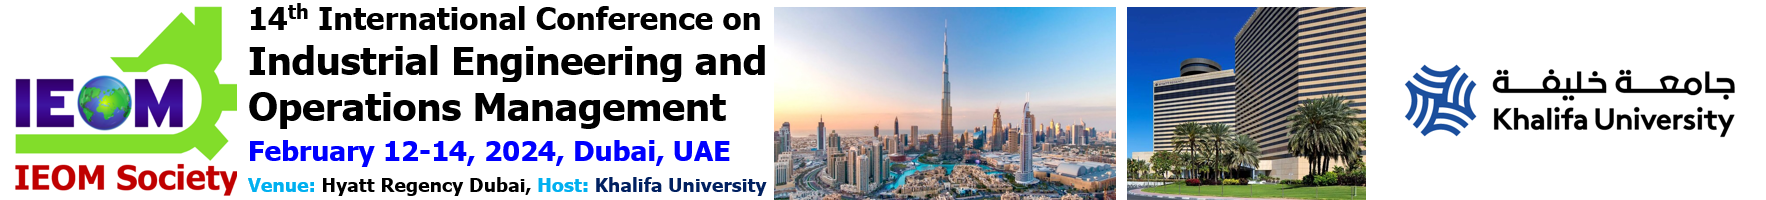 Dubai 2024